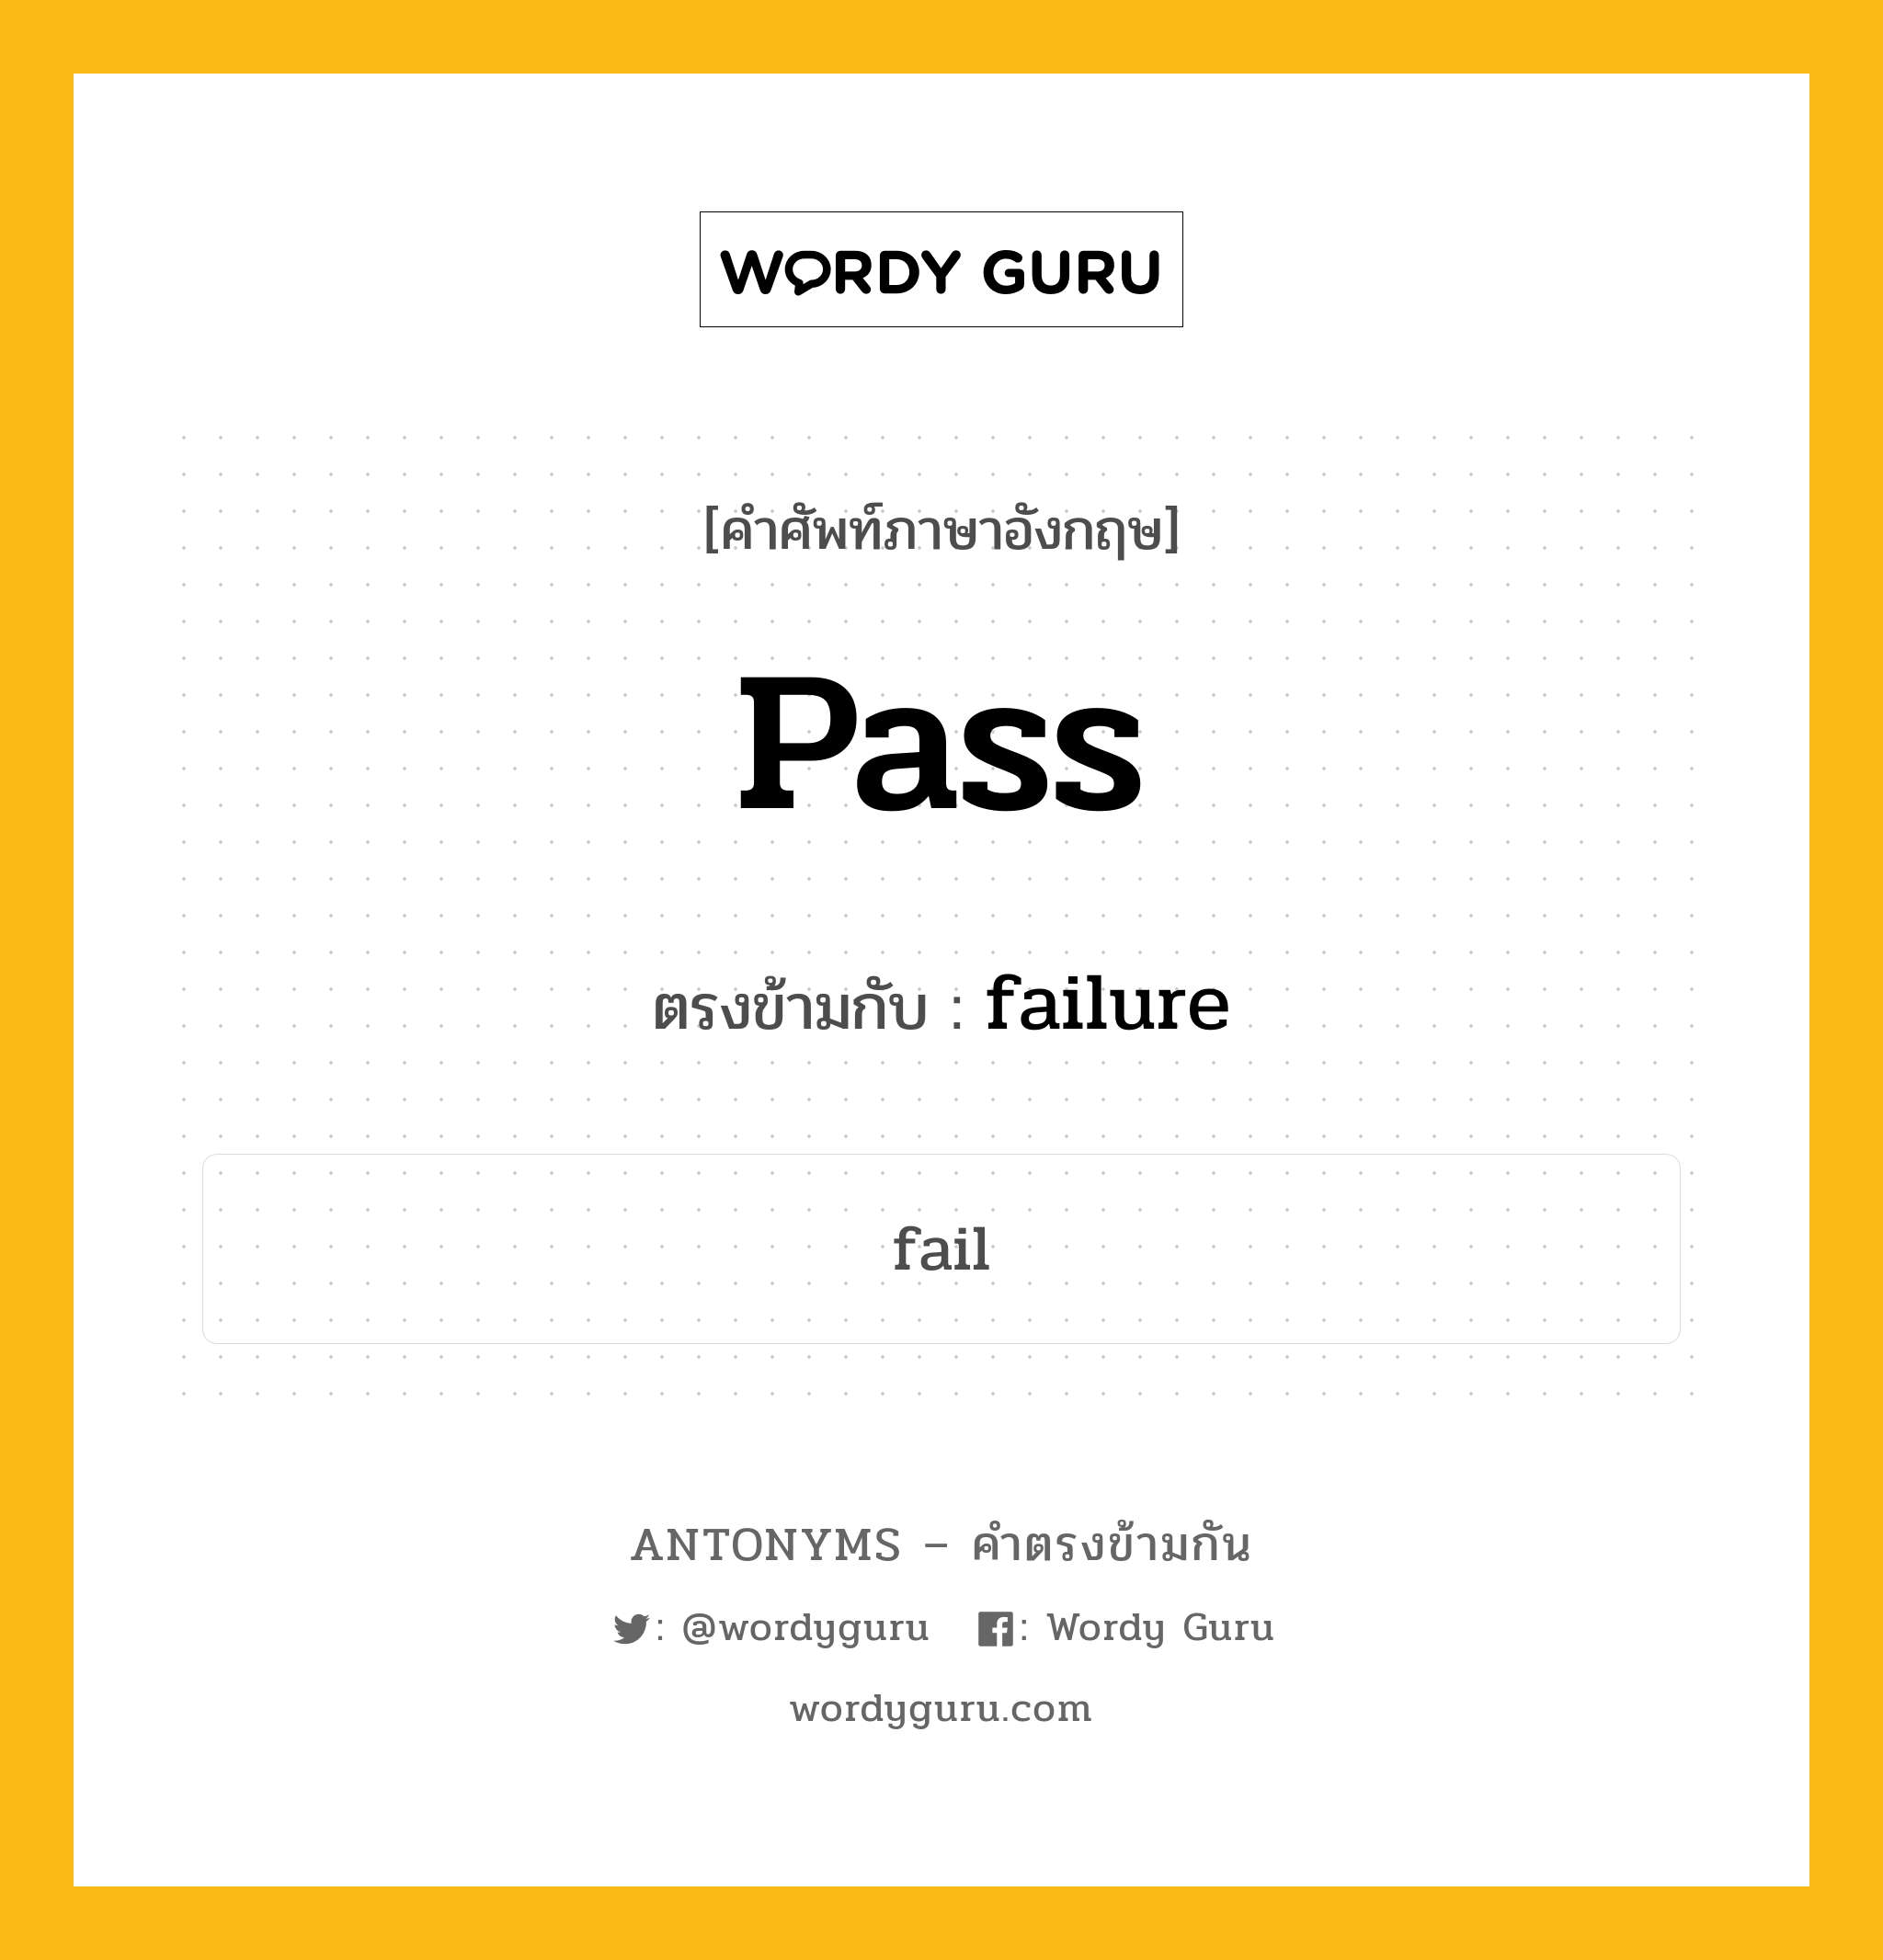 pass เป็นคำตรงข้ามกับคำไหนบ้าง?, คำศัพท์ภาษาอังกฤษ pass ตรงข้ามกับ failure หมวด failure